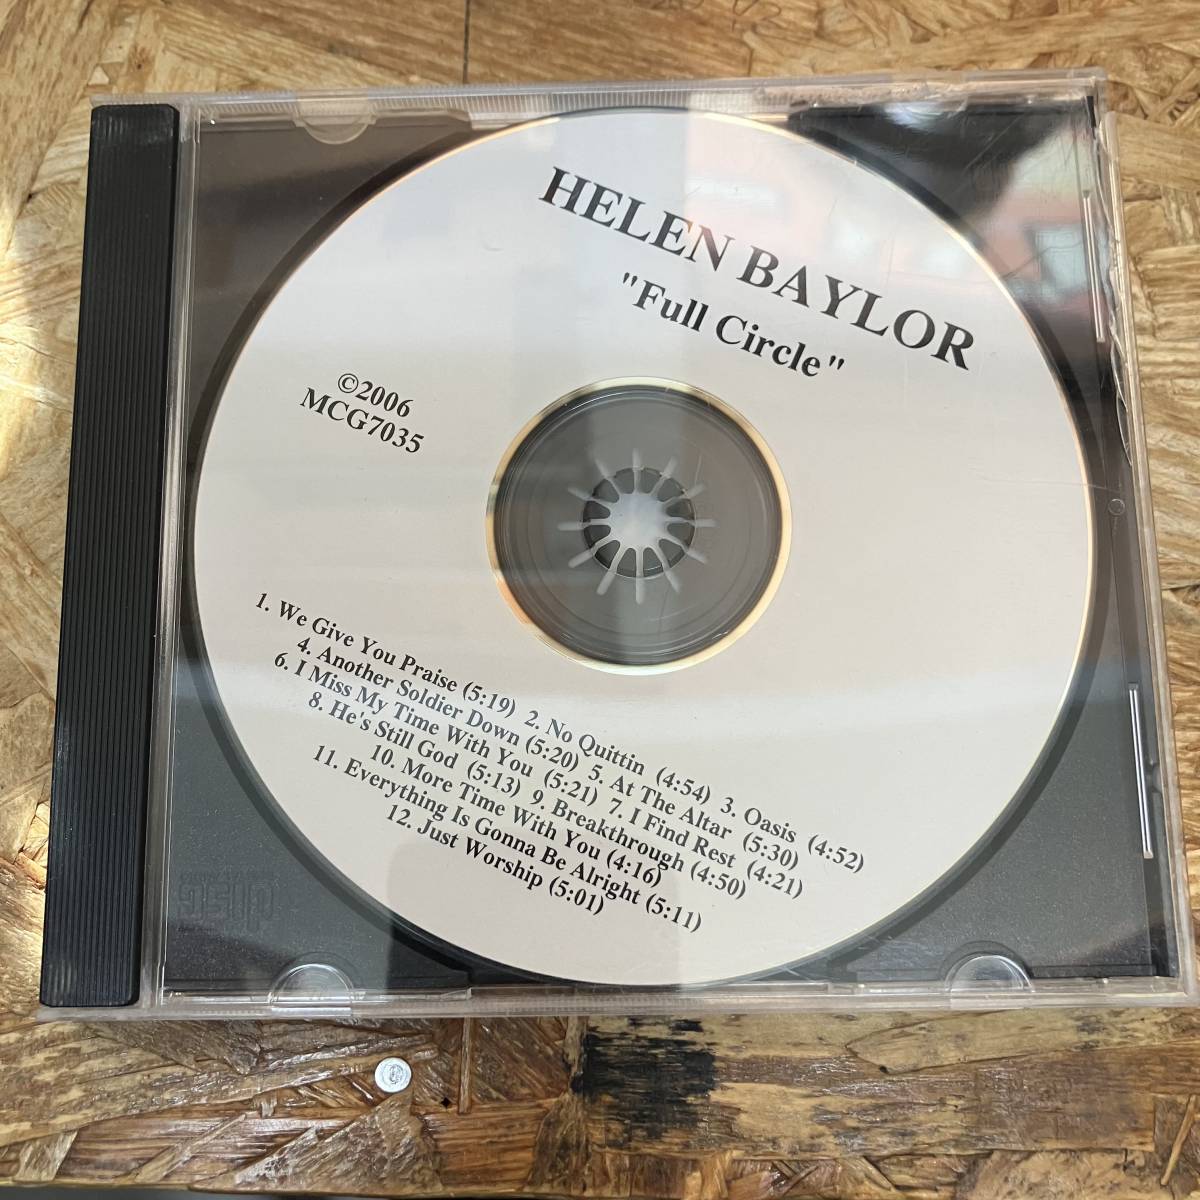 シ● ROCK,POPS HELEN BAYLOR - FULL CIRCLE アルバム CD 中古品_画像1